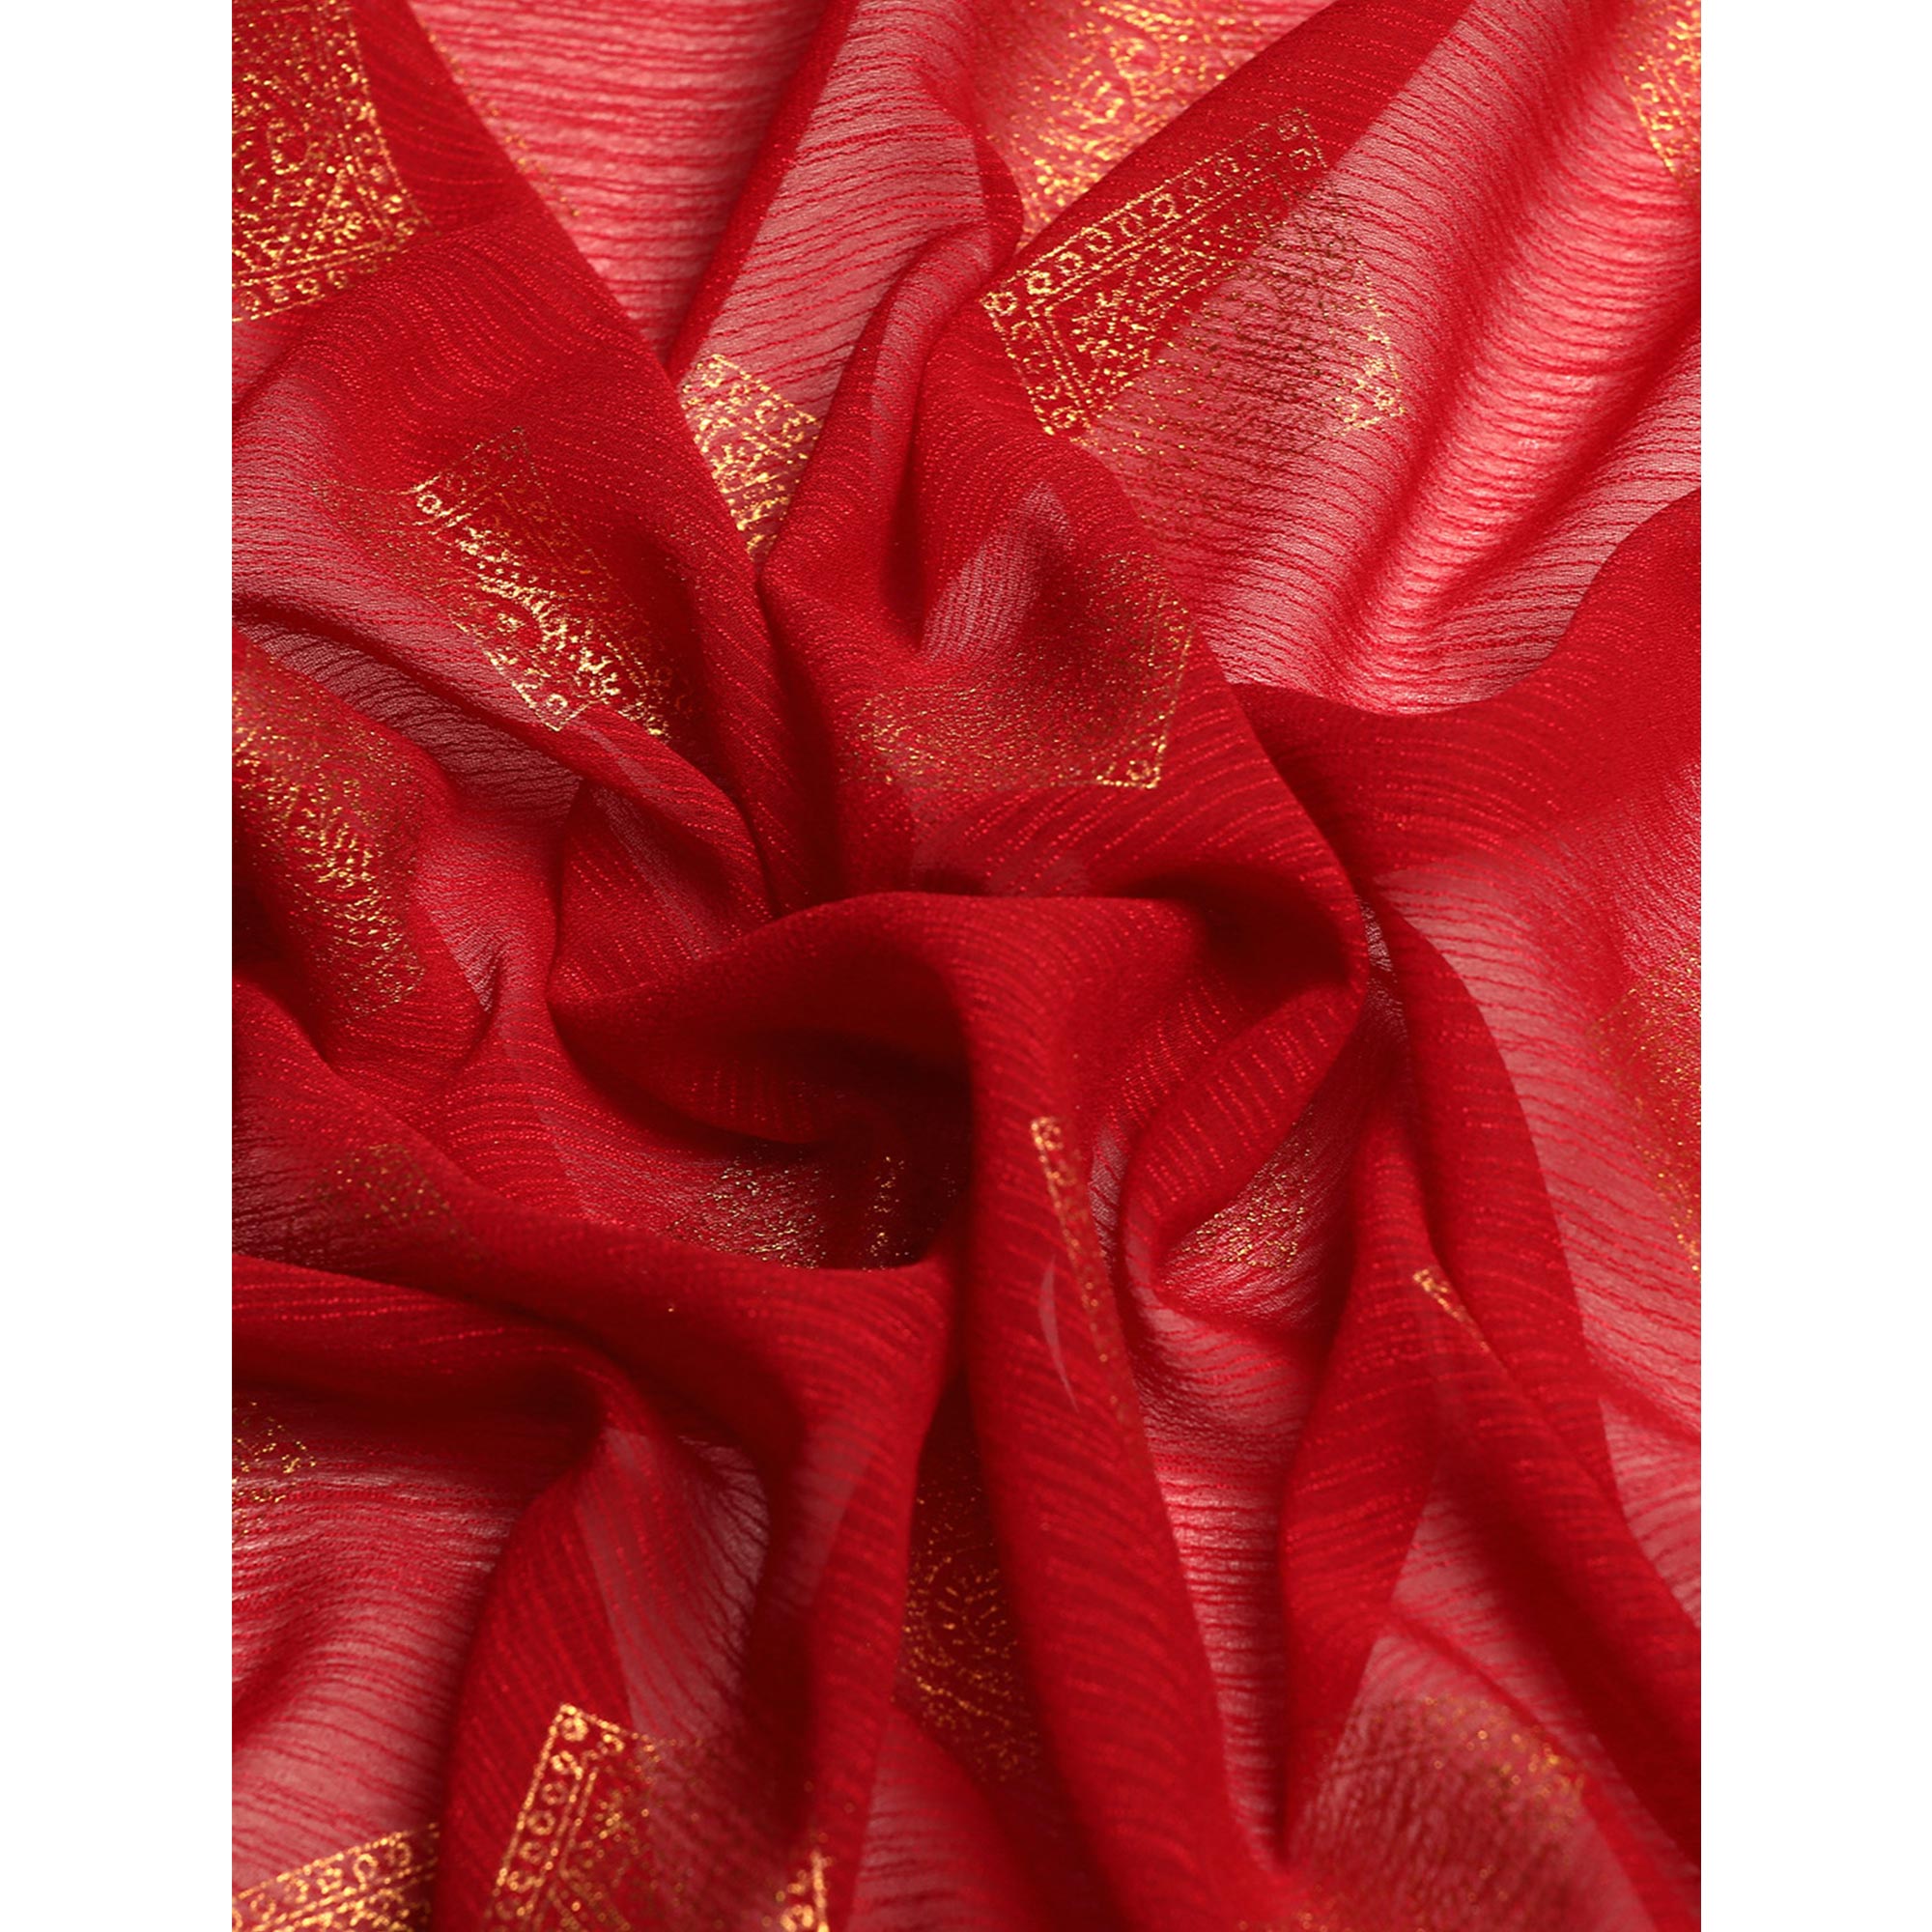 Maroon Foil Printed Chiffon Saree With Tassels